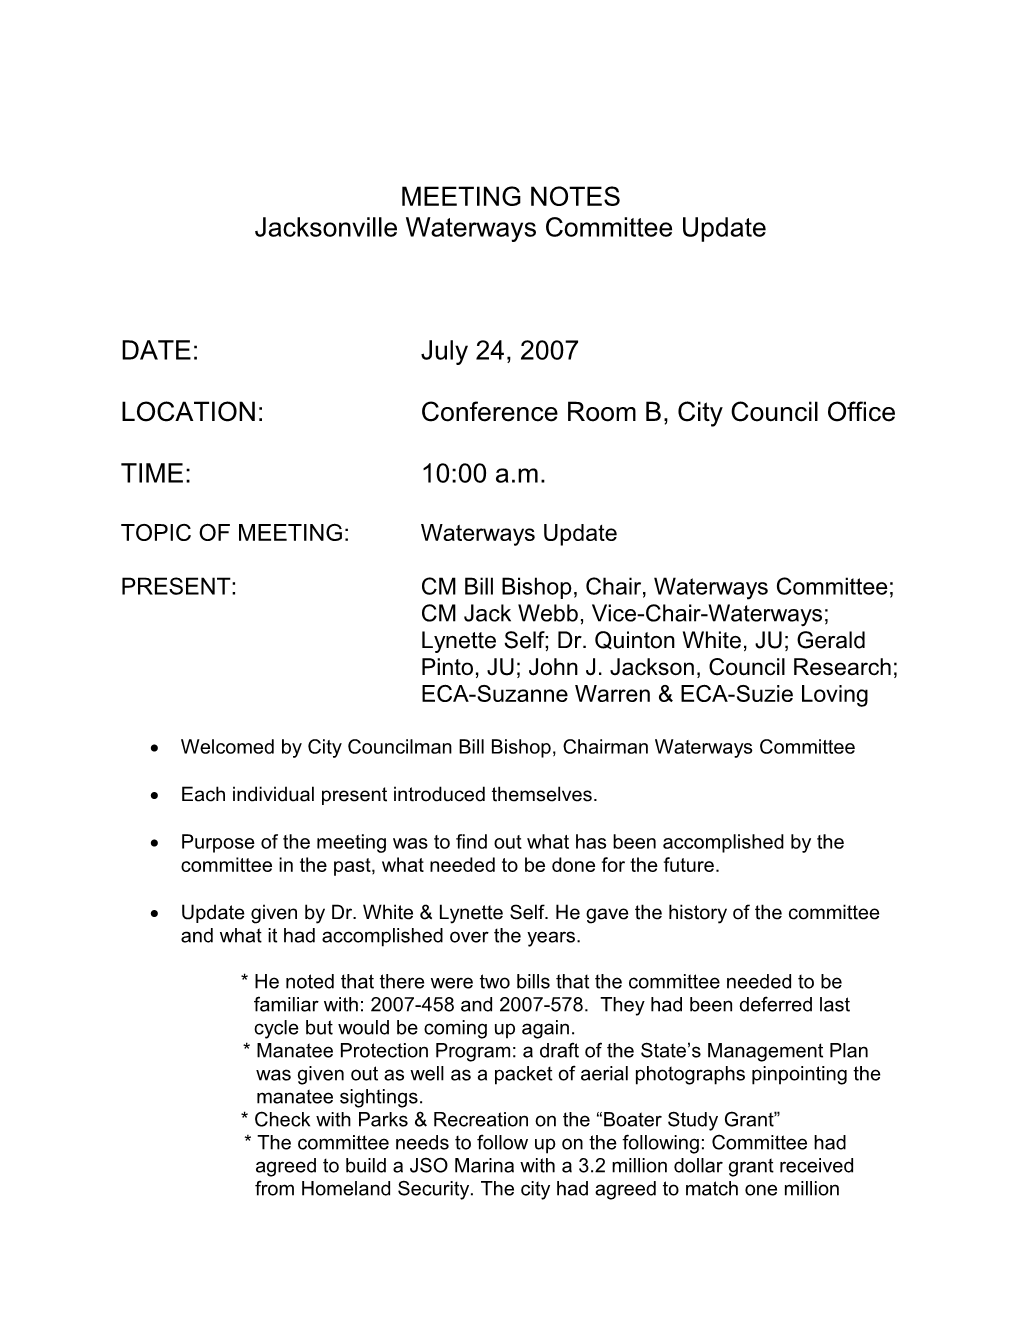 Jacksonville Waterways Committee Update